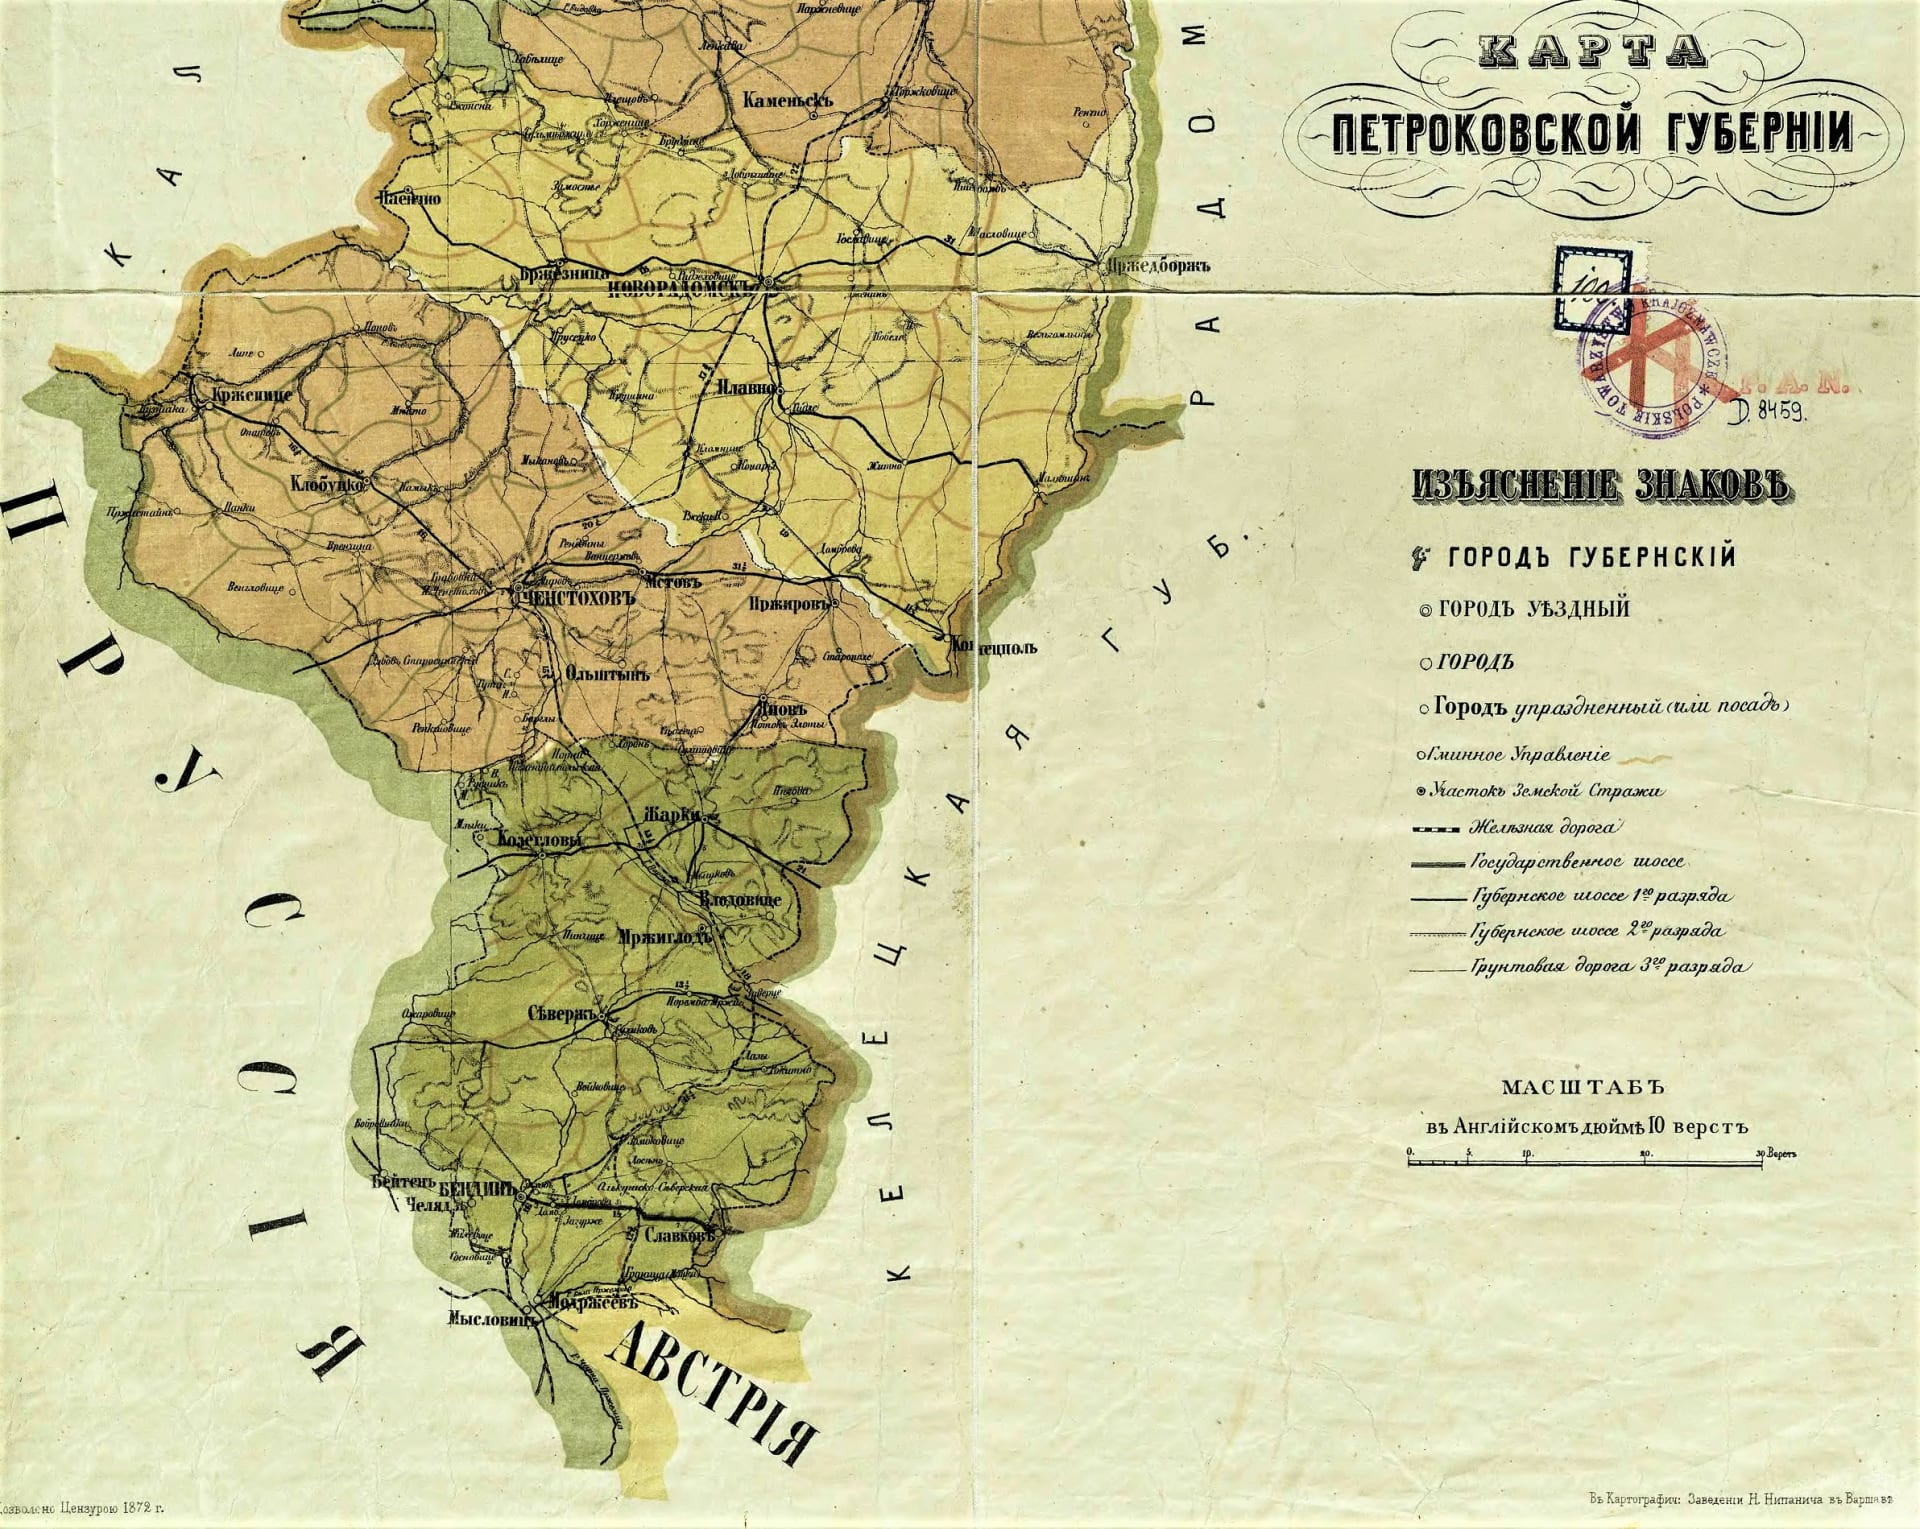 Trojmezí tří císařů u města Sosnowiec. Mapa Petrokovské  gubernie, pod kterou Sosnowiec patřil. Trojmezí oddělovalo Rusko od Rakouska-Uherska a Německa (Pruska).